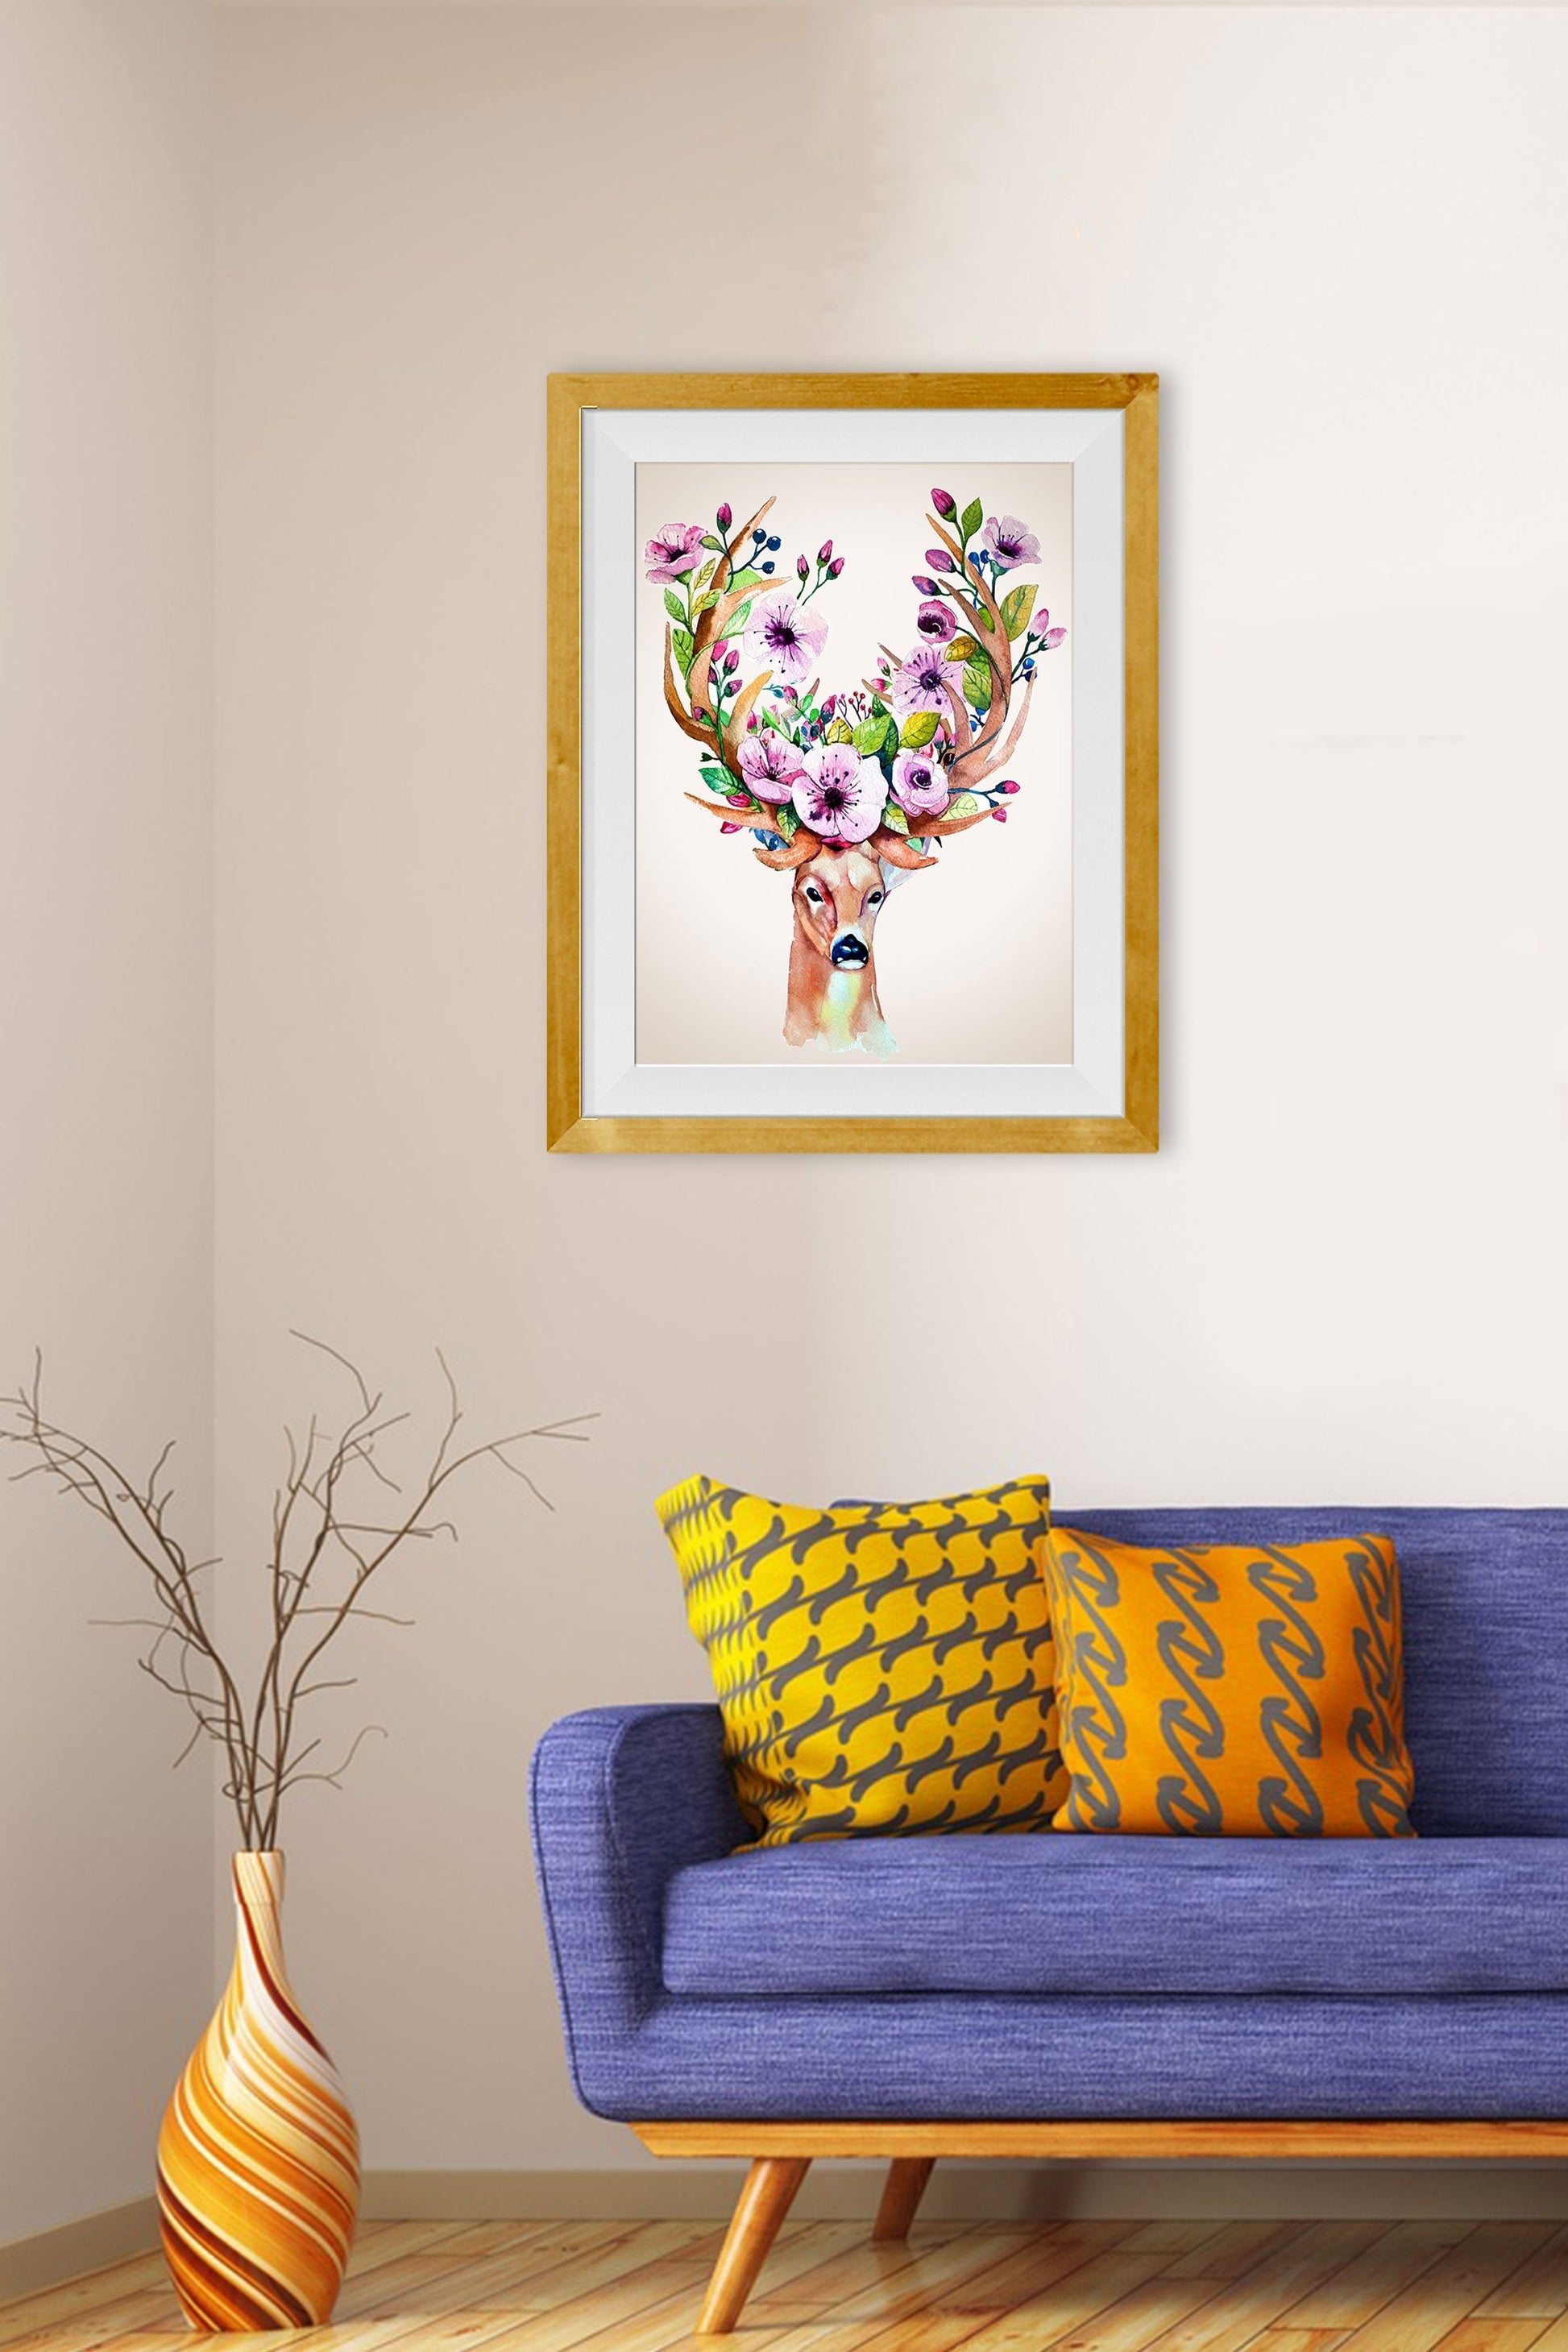 Deer With Flowers Painting - Meri Deewar - MeriDeewar